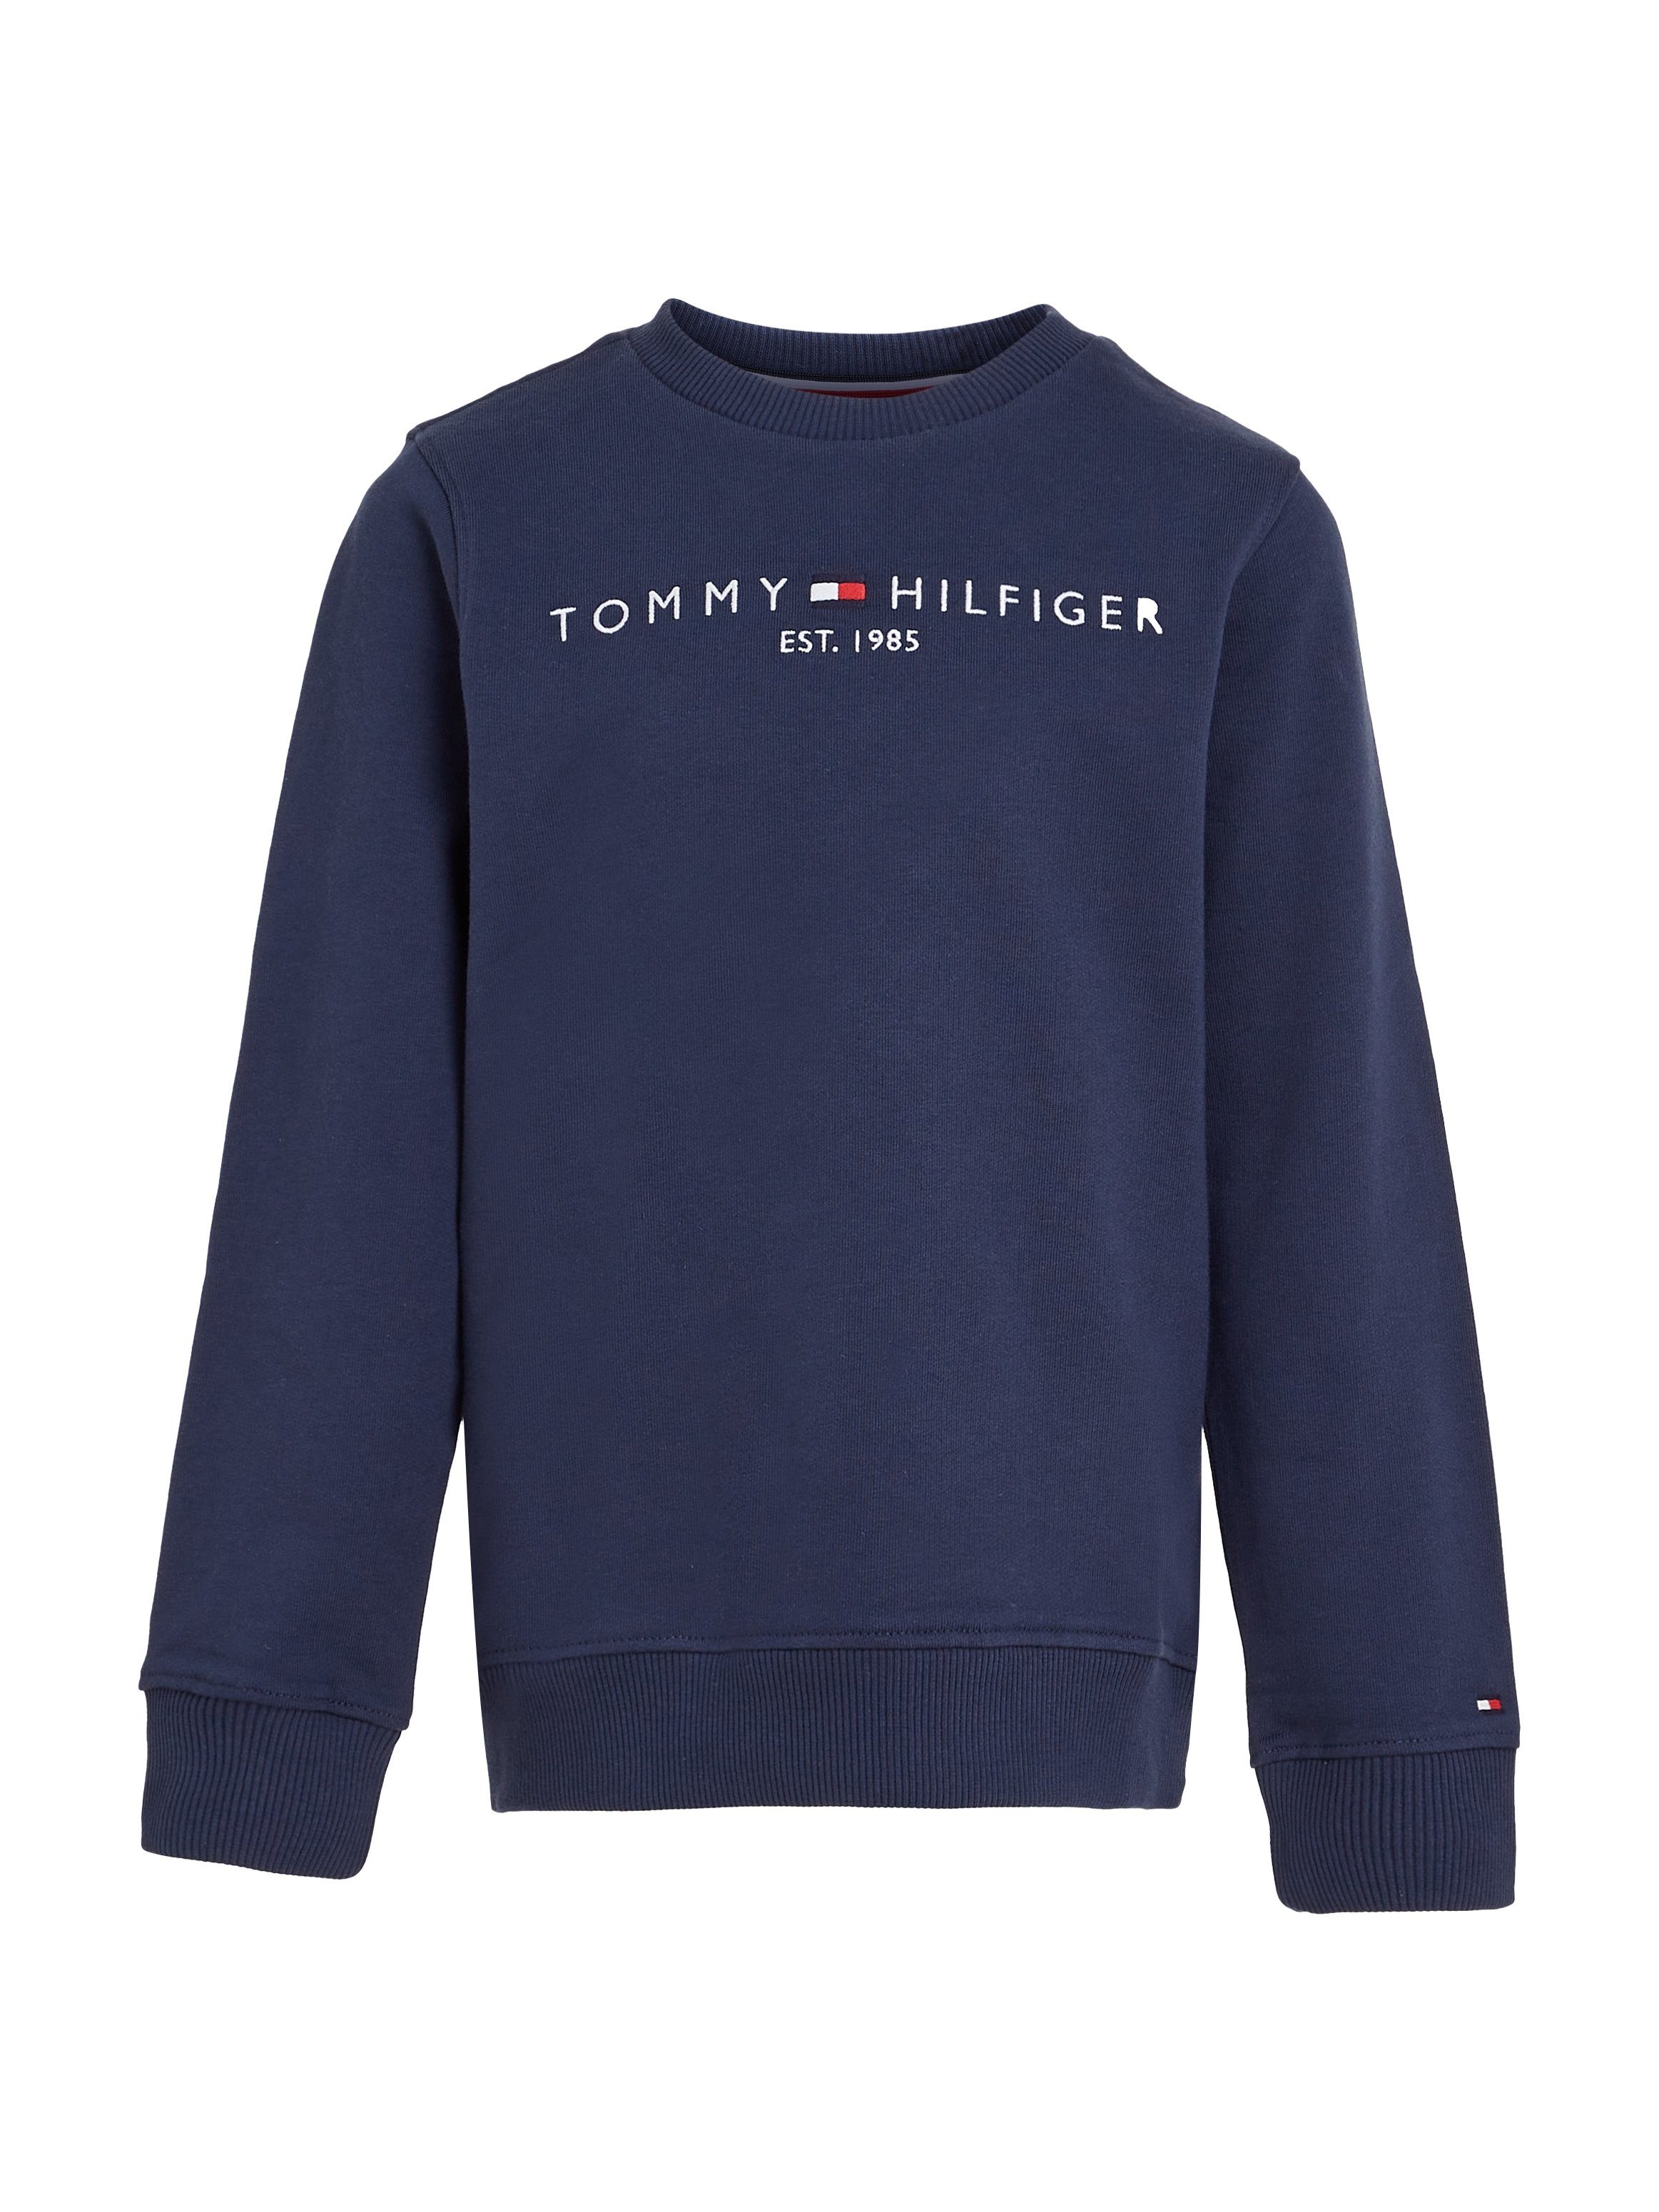 Tommy Hilfiger Sweatshirt ESSENTIAL Tommy mit Logo-Schriftzug SWEATSHIRT Twilight_Navy Hilfger